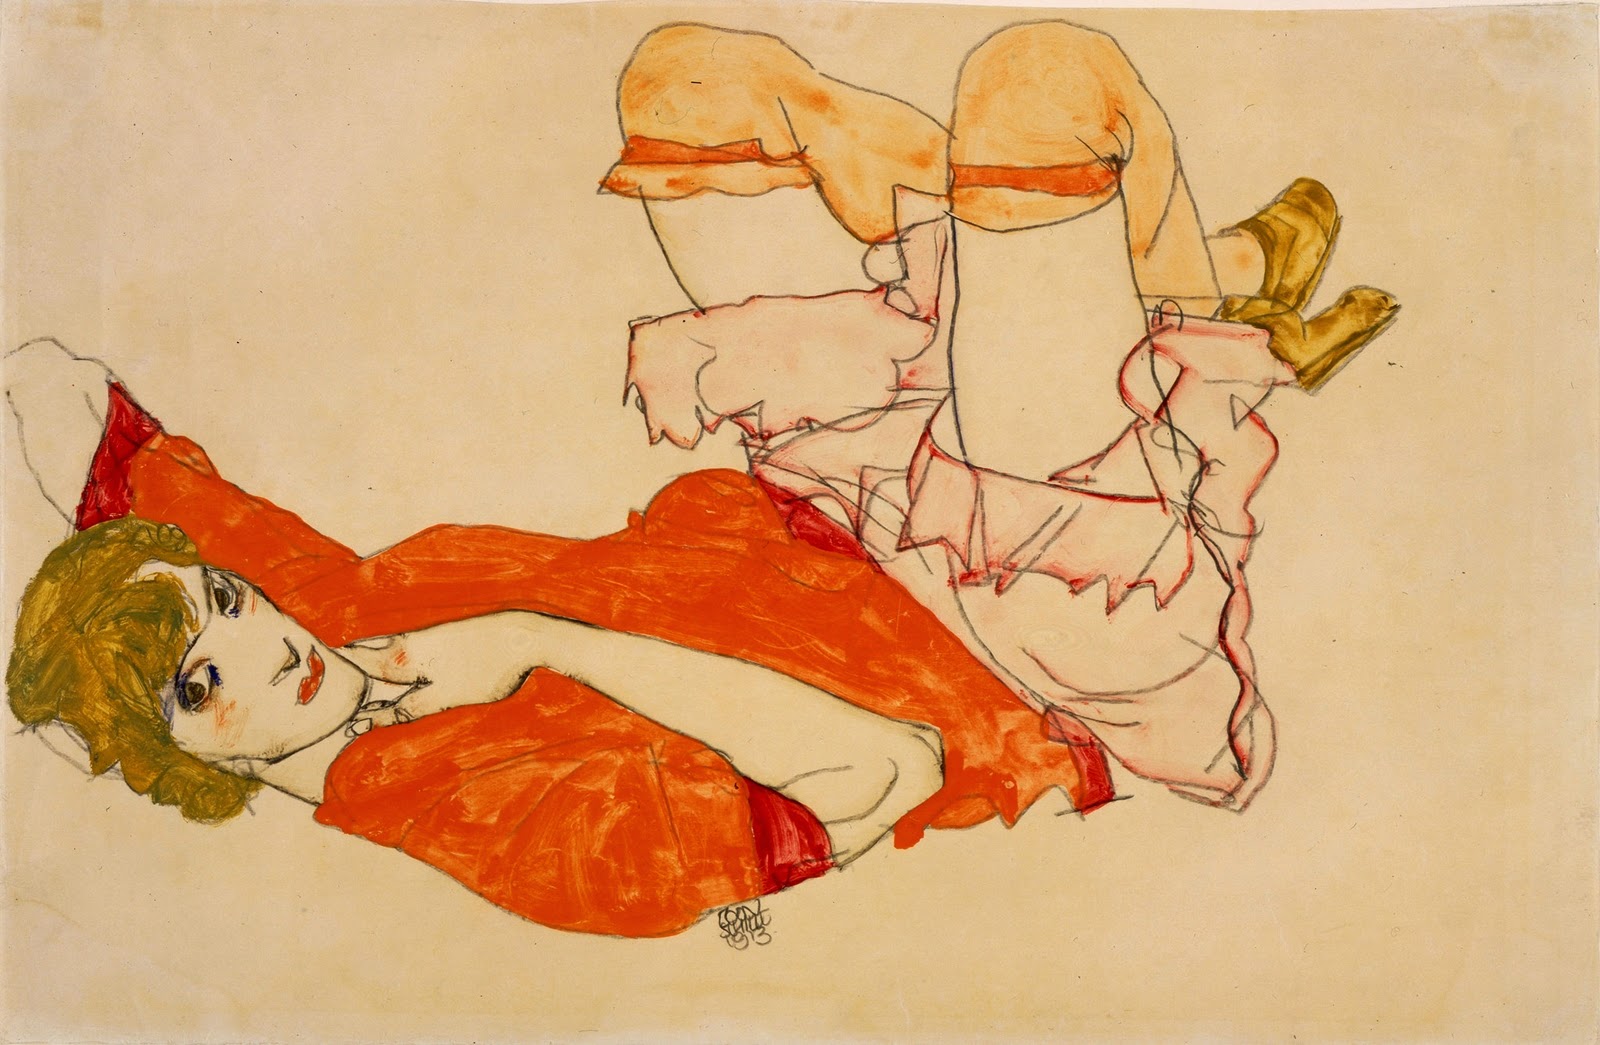 Egon+Schiele-1890-1918 (24).jpg